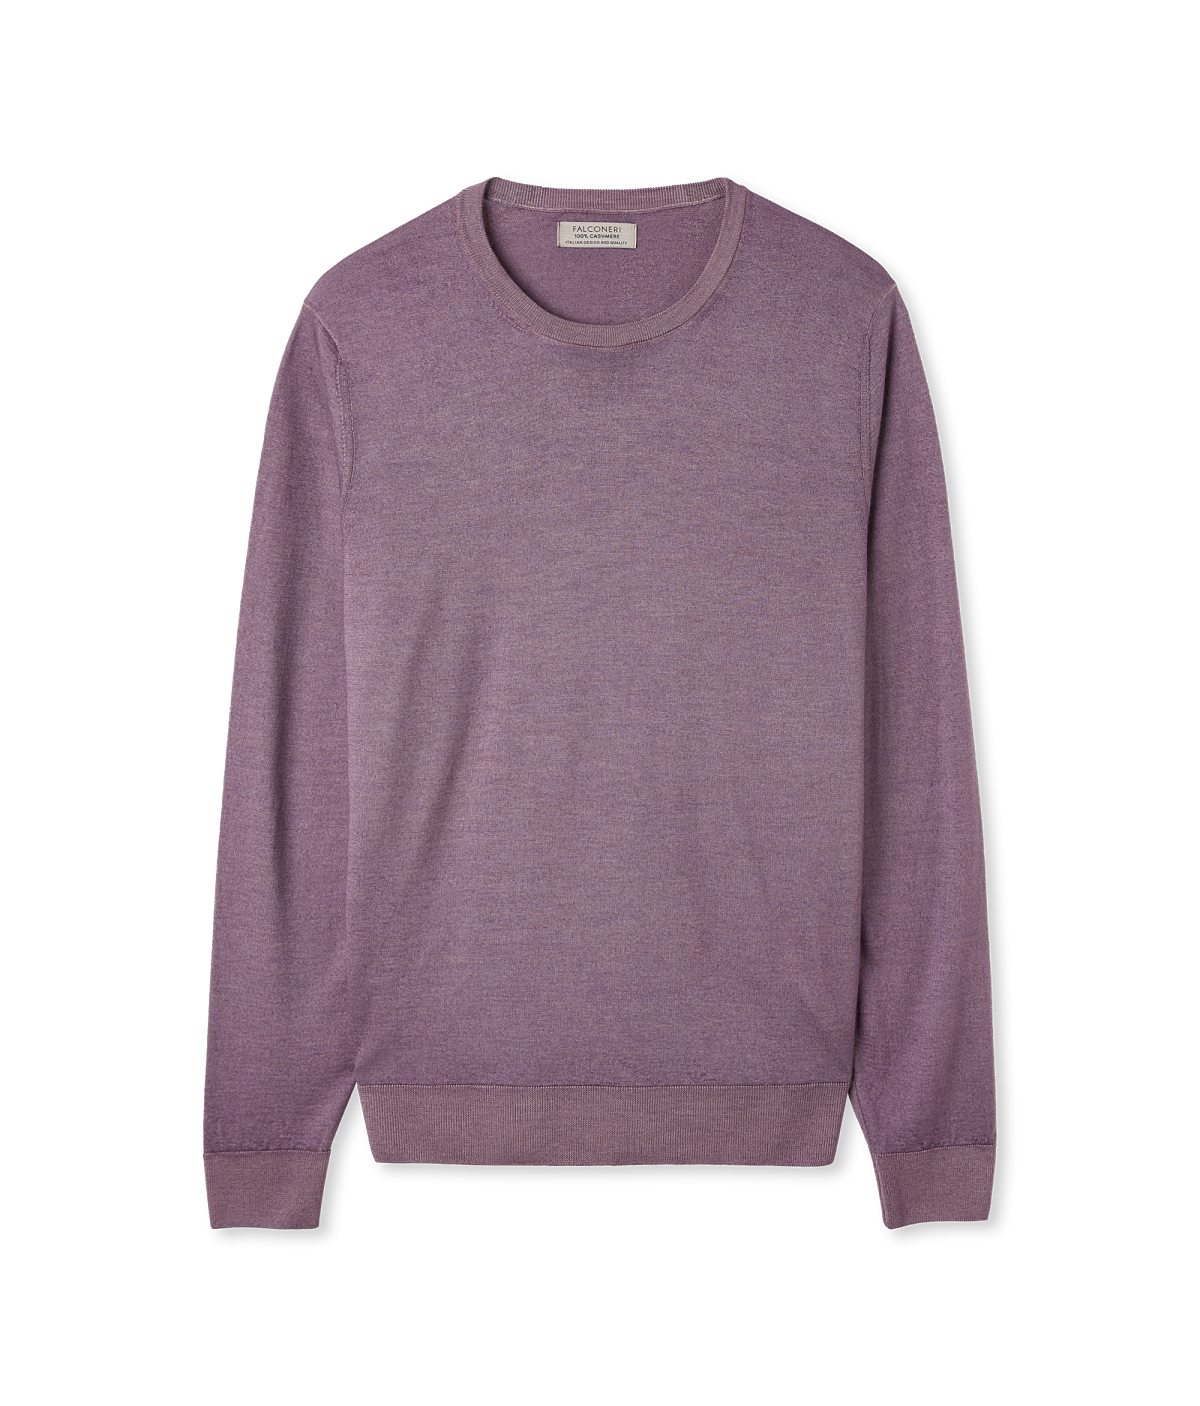 FLC_Männer Rundhals-Pullover aus Ultrafine Cashmere_Lavendel Stückgefärbt_ EUR 149